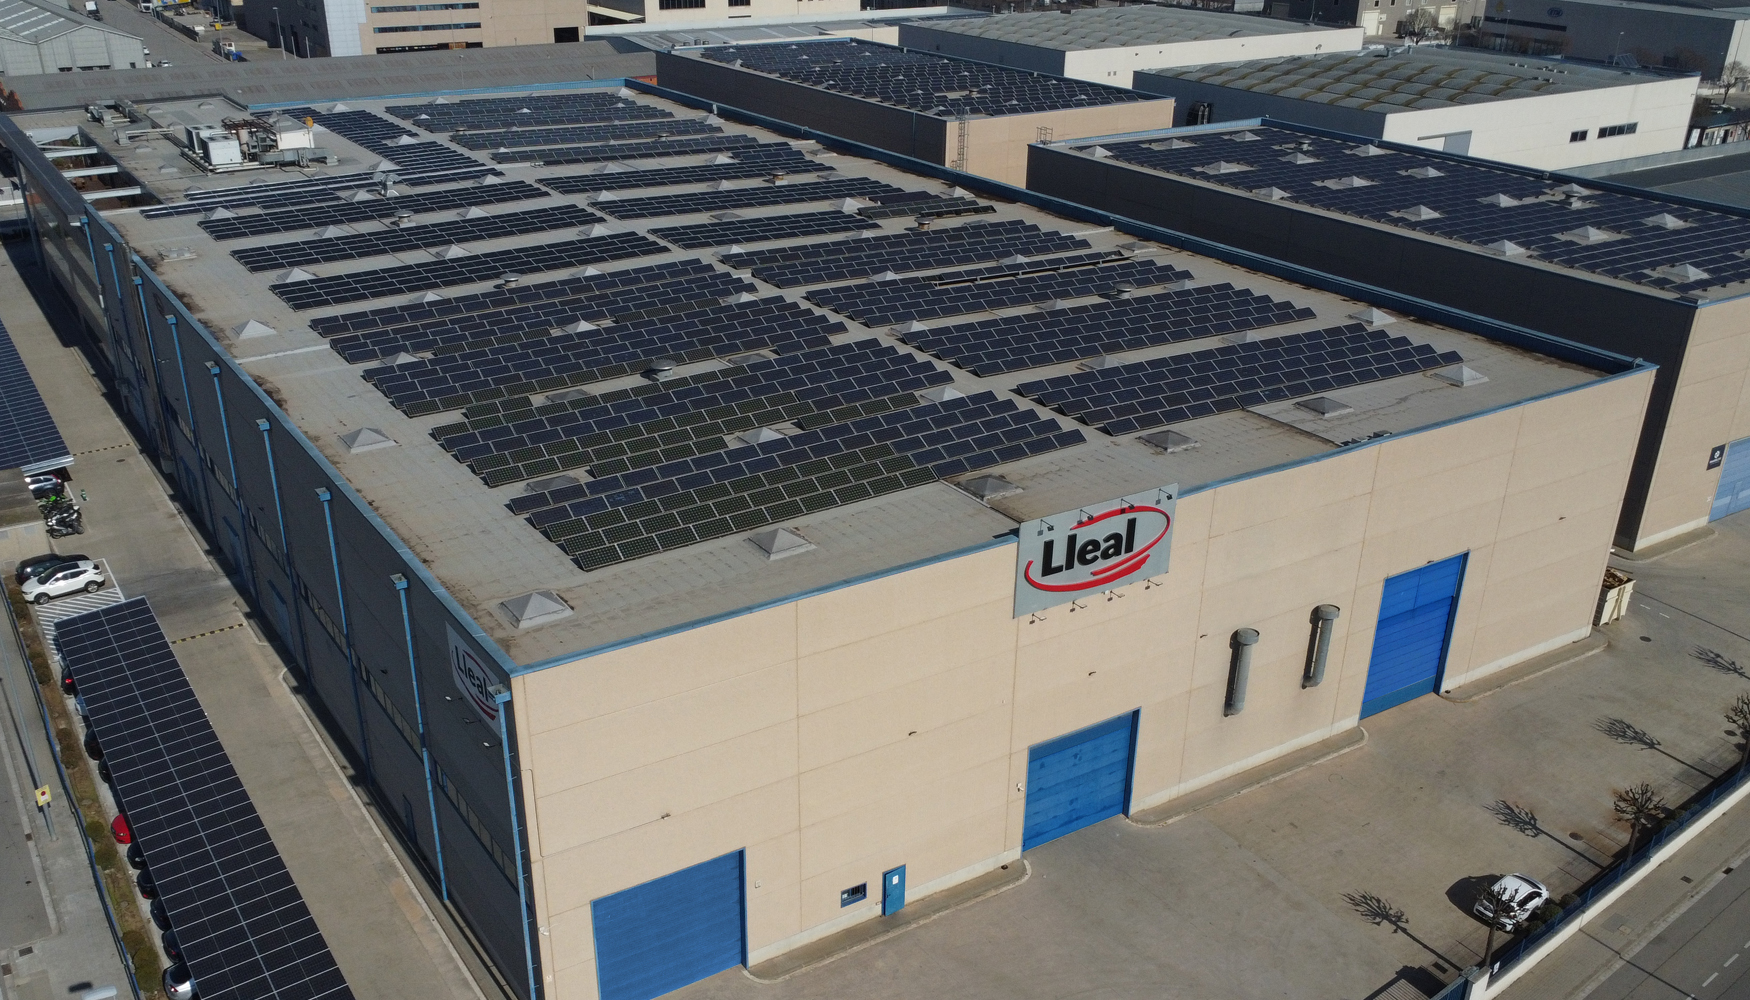 Lleal cuenta con una instalacin de autoconsumo fotovoltaico de 550 kW que le permite tener una generacin de energa elctrica renovable superior a...